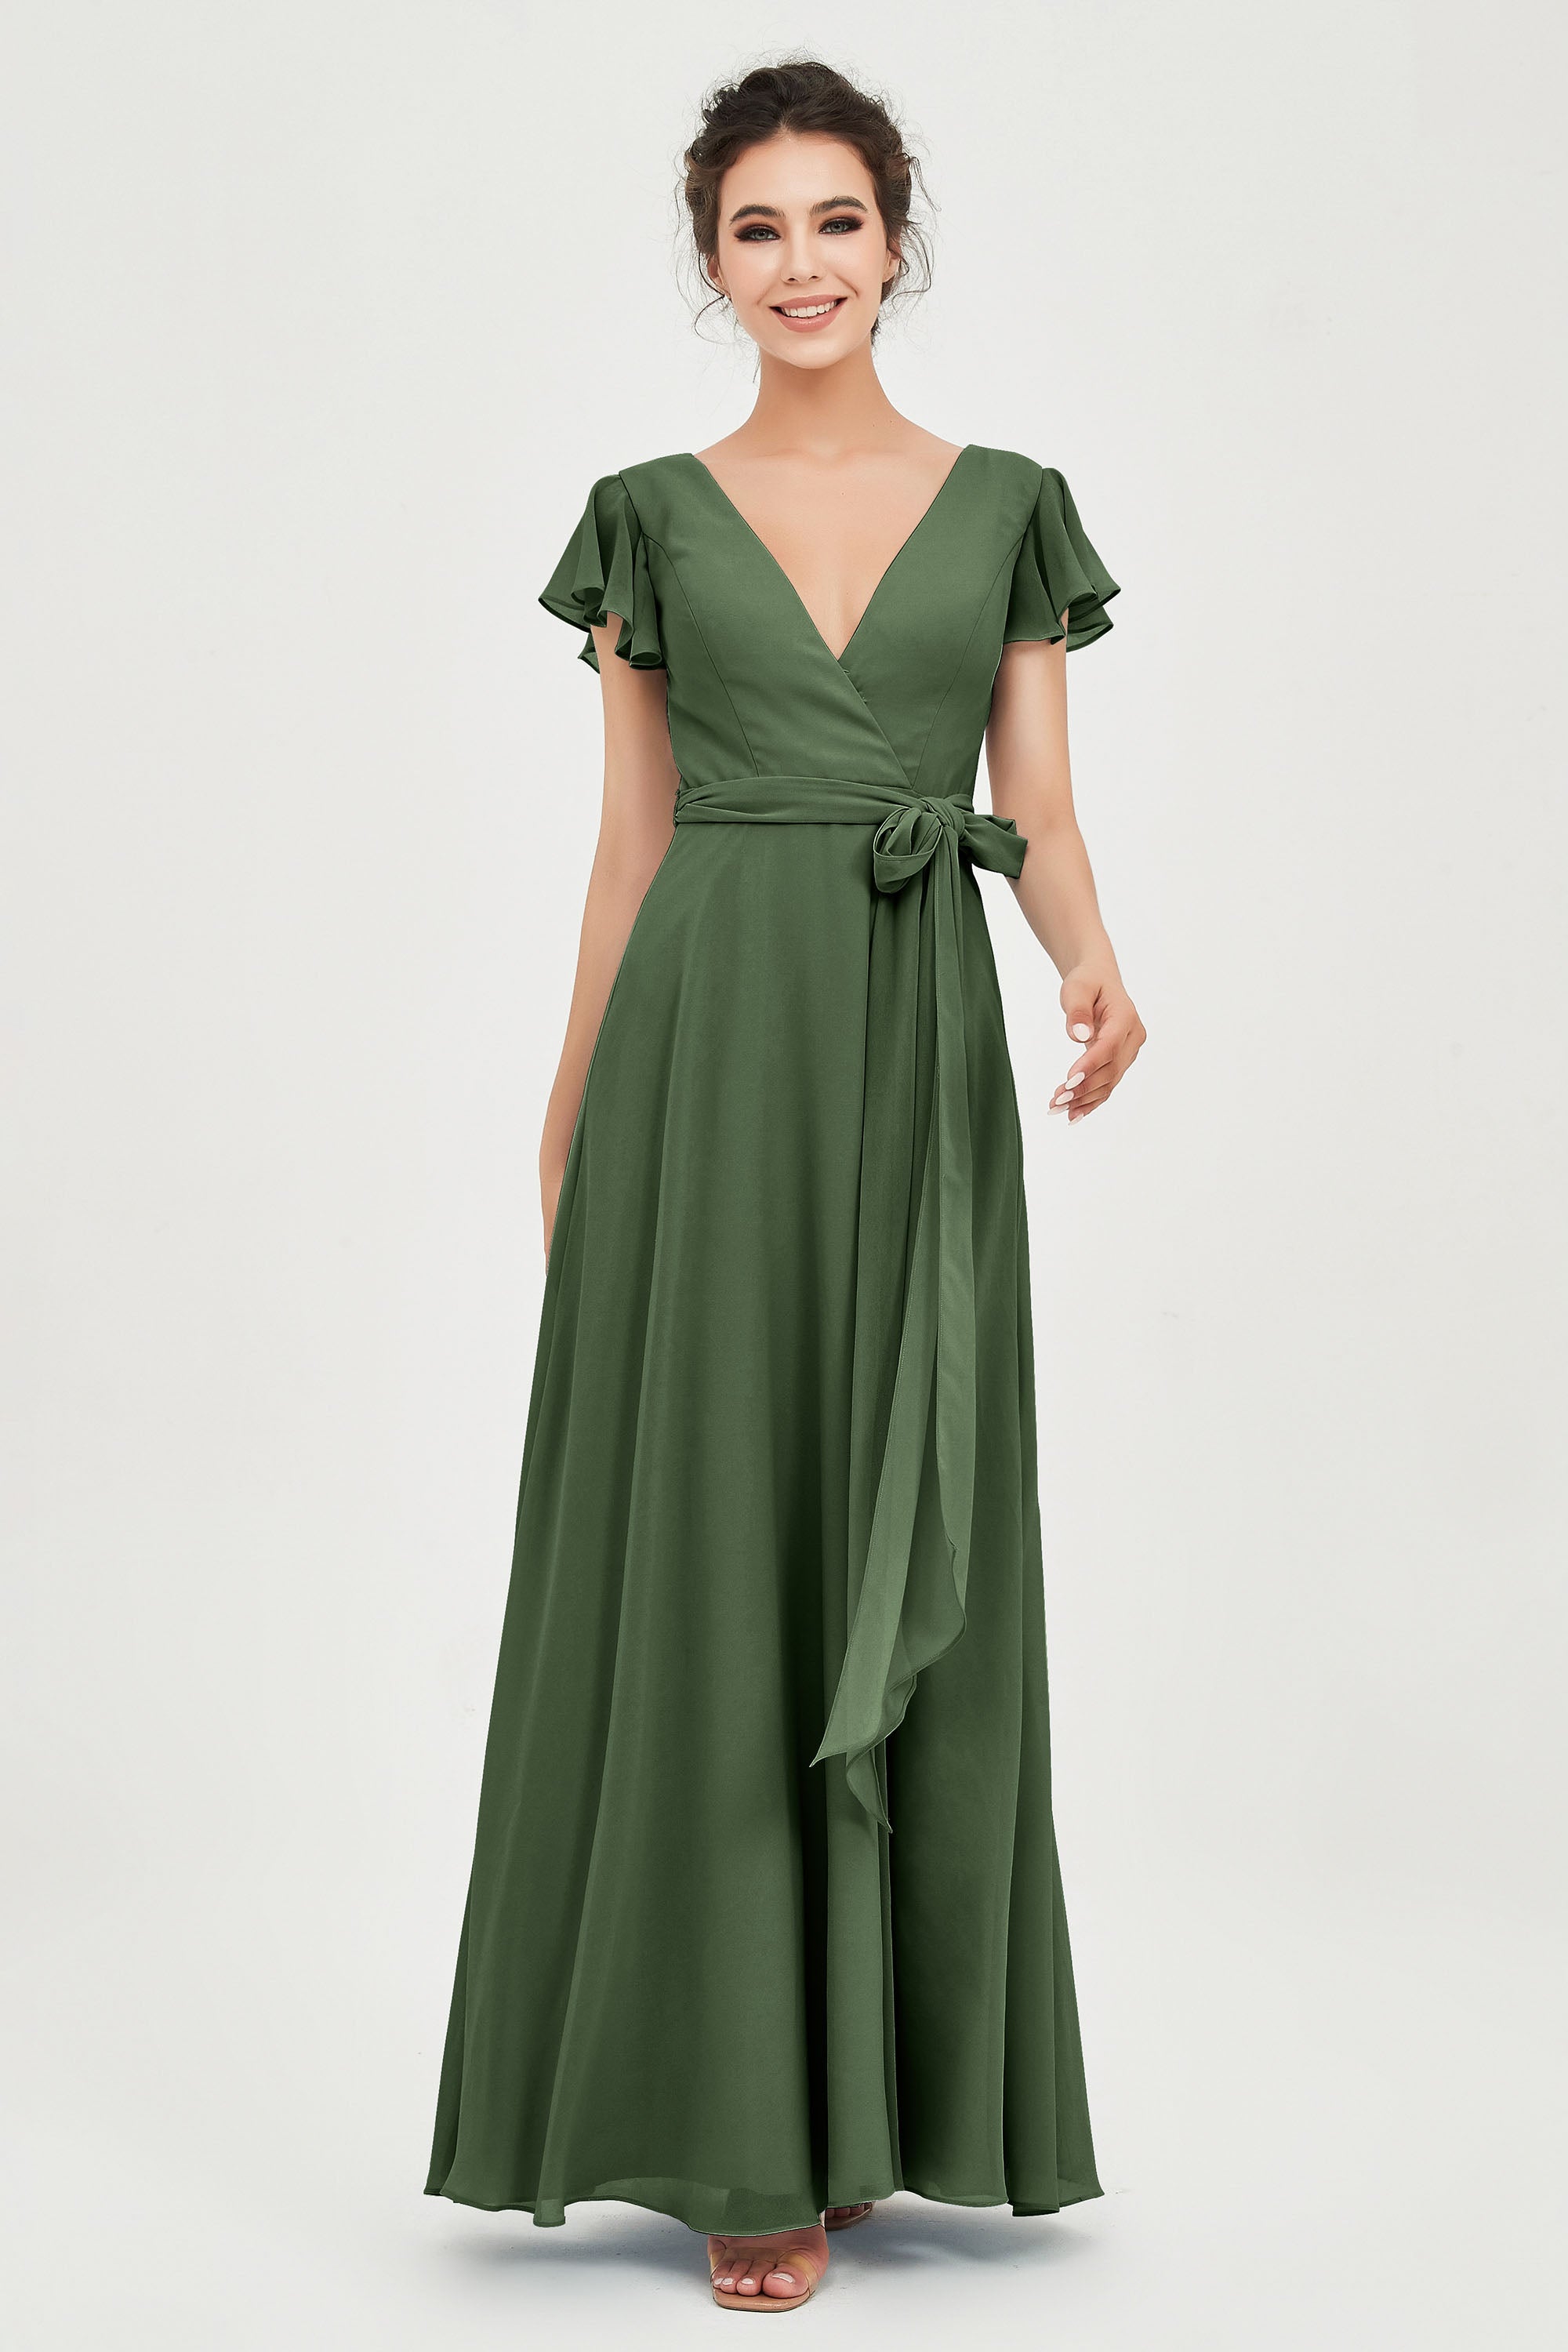 V-Neckline Floor Length Chiffon Bridesmaid Dress – DUNTERY UK